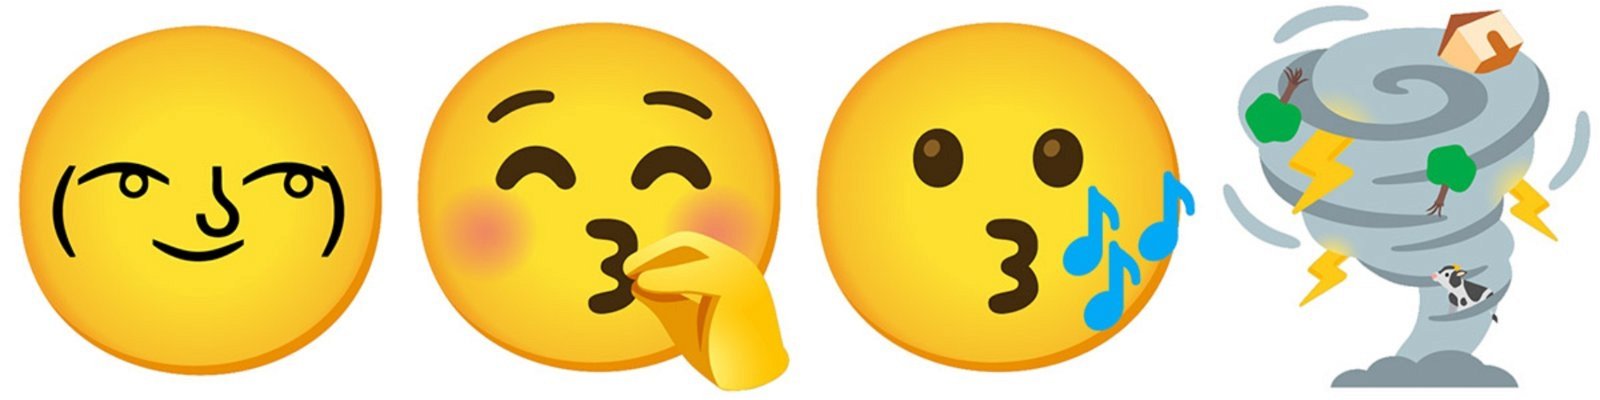 emojis combinados de Gboard 10